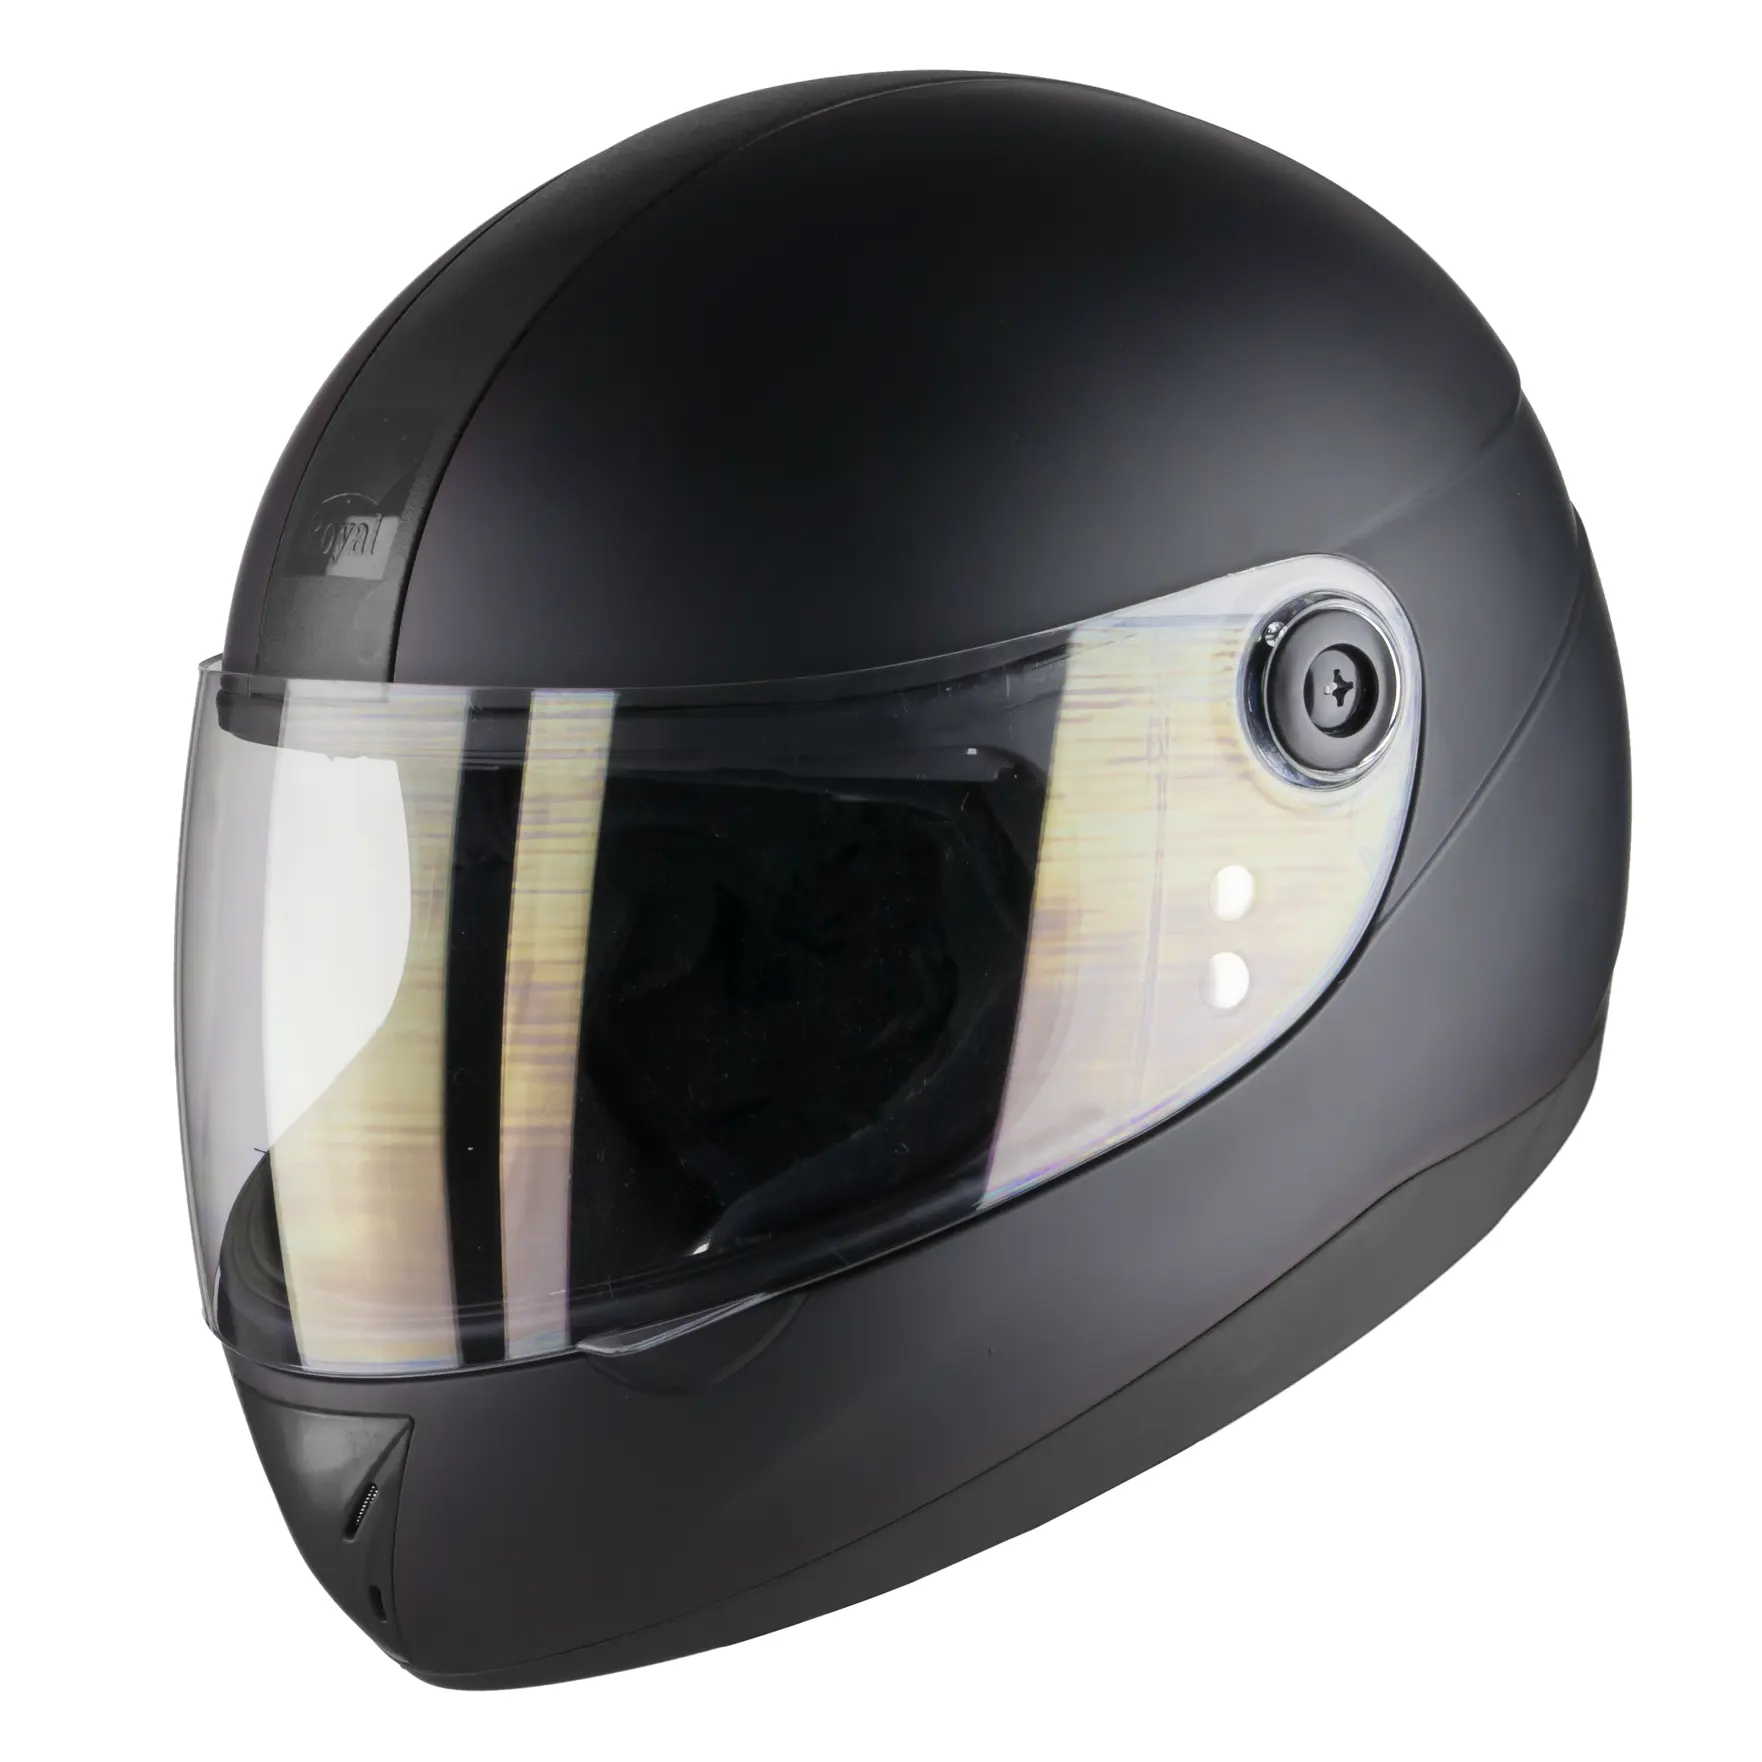 Helm anti UV dan standar tinggi, helm perlindungan keselamatan wajah penuh desain klasik dengan visor canggih ABS Royal M02